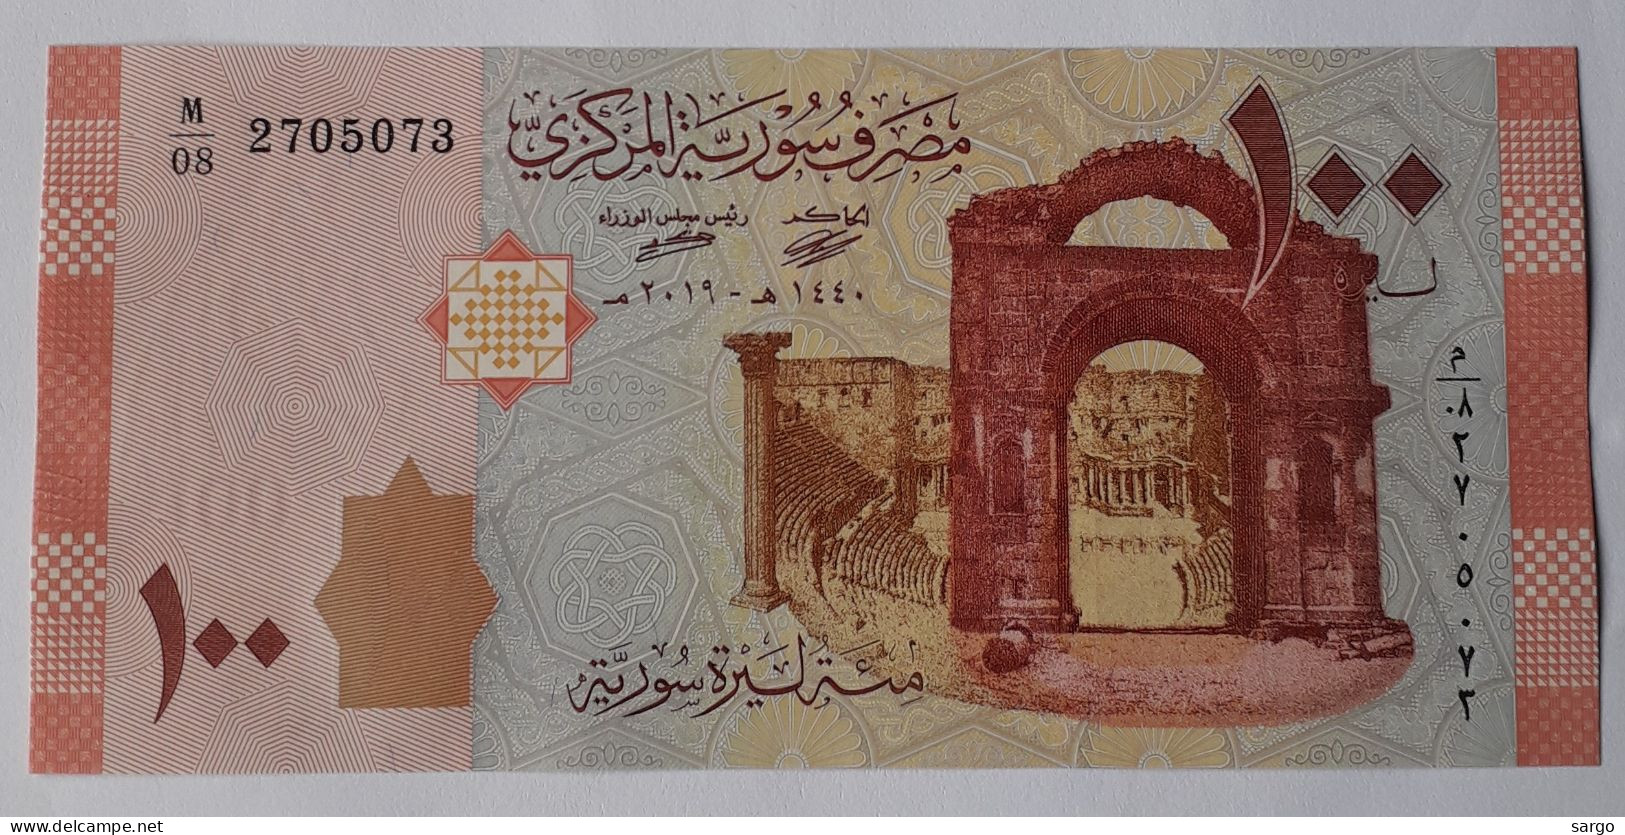 SYRIA  - 100 POUND - P 113b  (2019) - UNC -  BANKNOTES - PAPER MONEY - Siria